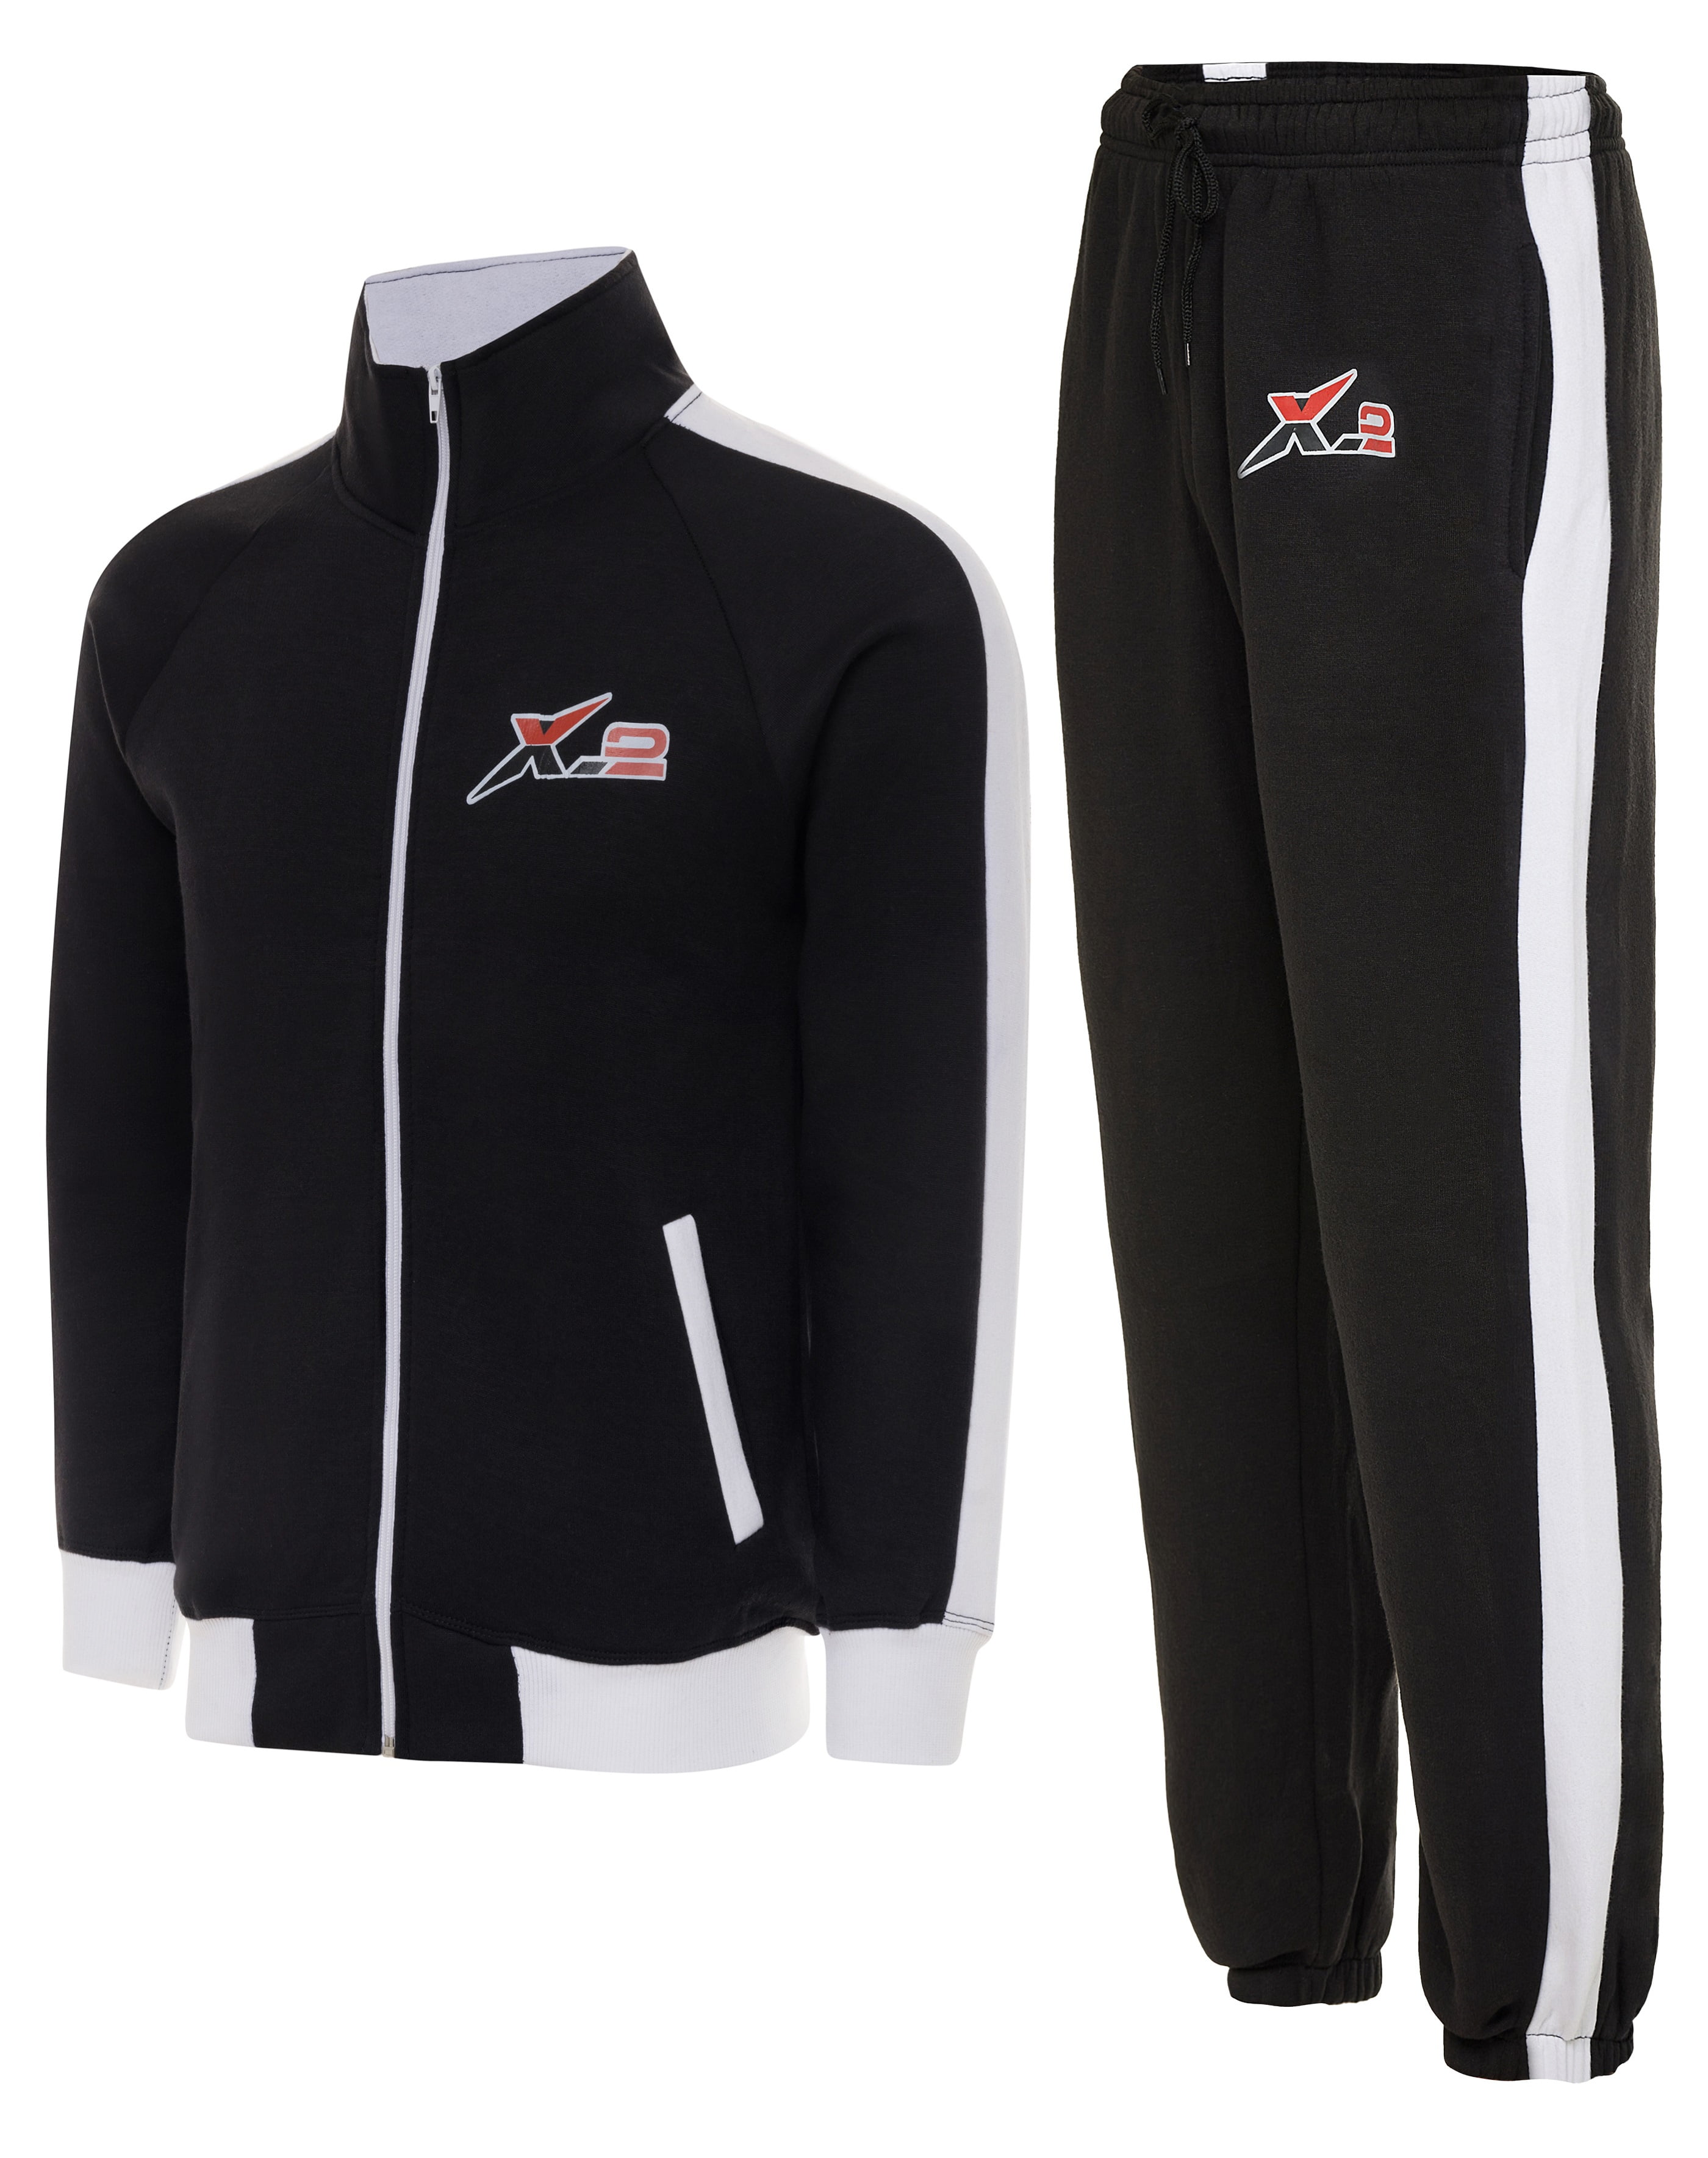 X-2 Men Tracksuits 2 Pieces Set Jogging Athletic Sports Set White Black  Size S